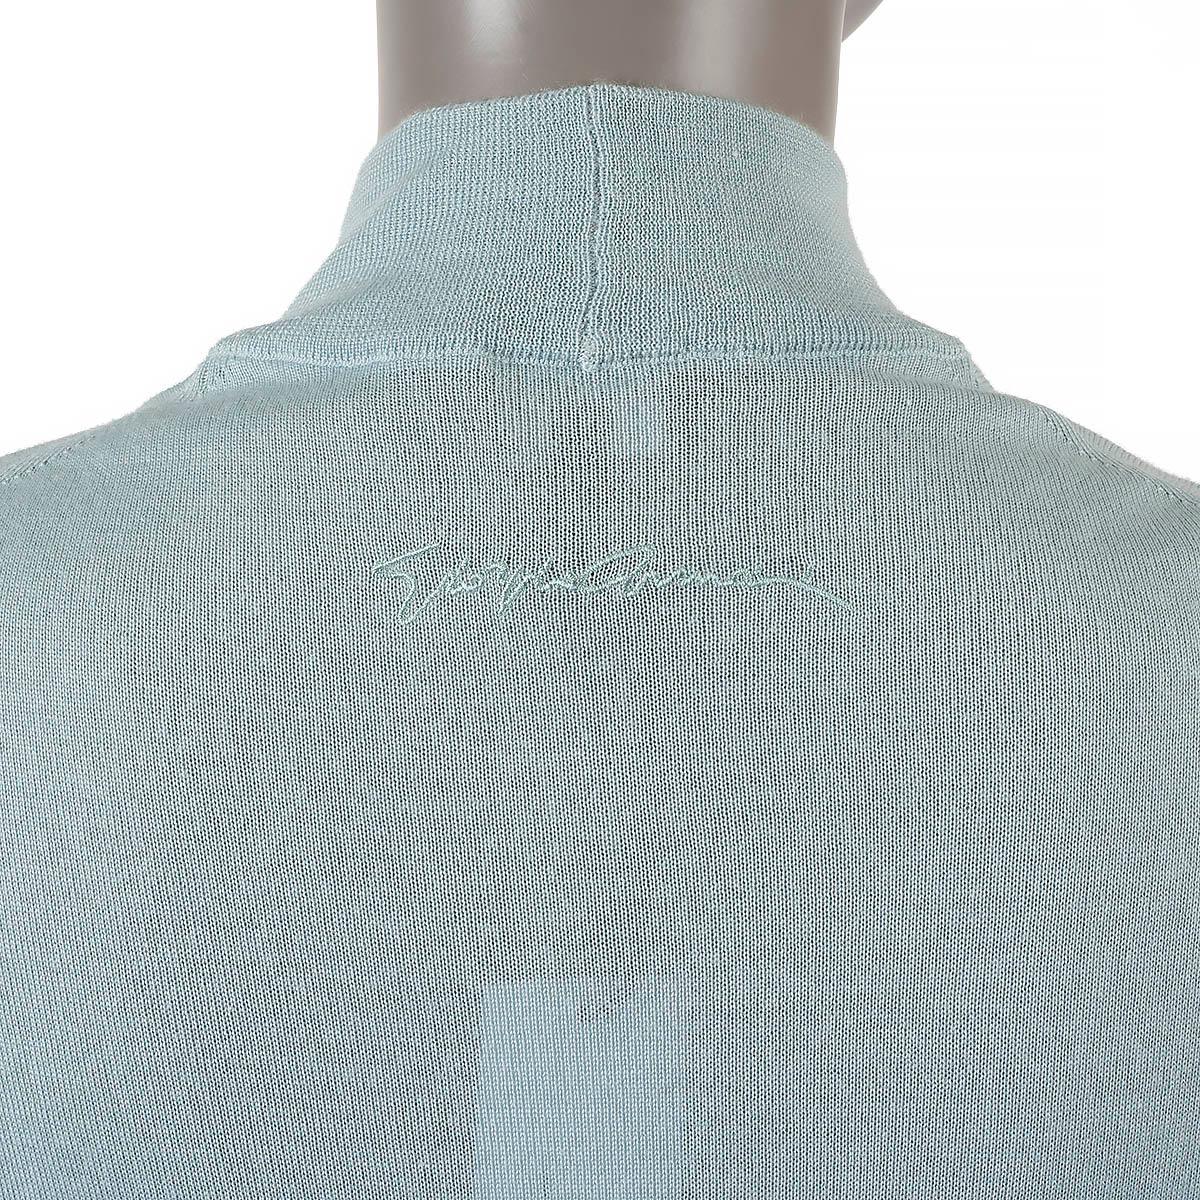 GIORGIO ARMANI aqua blue cashmere silk MOCK NECK Sweater 40 S For Sale 2